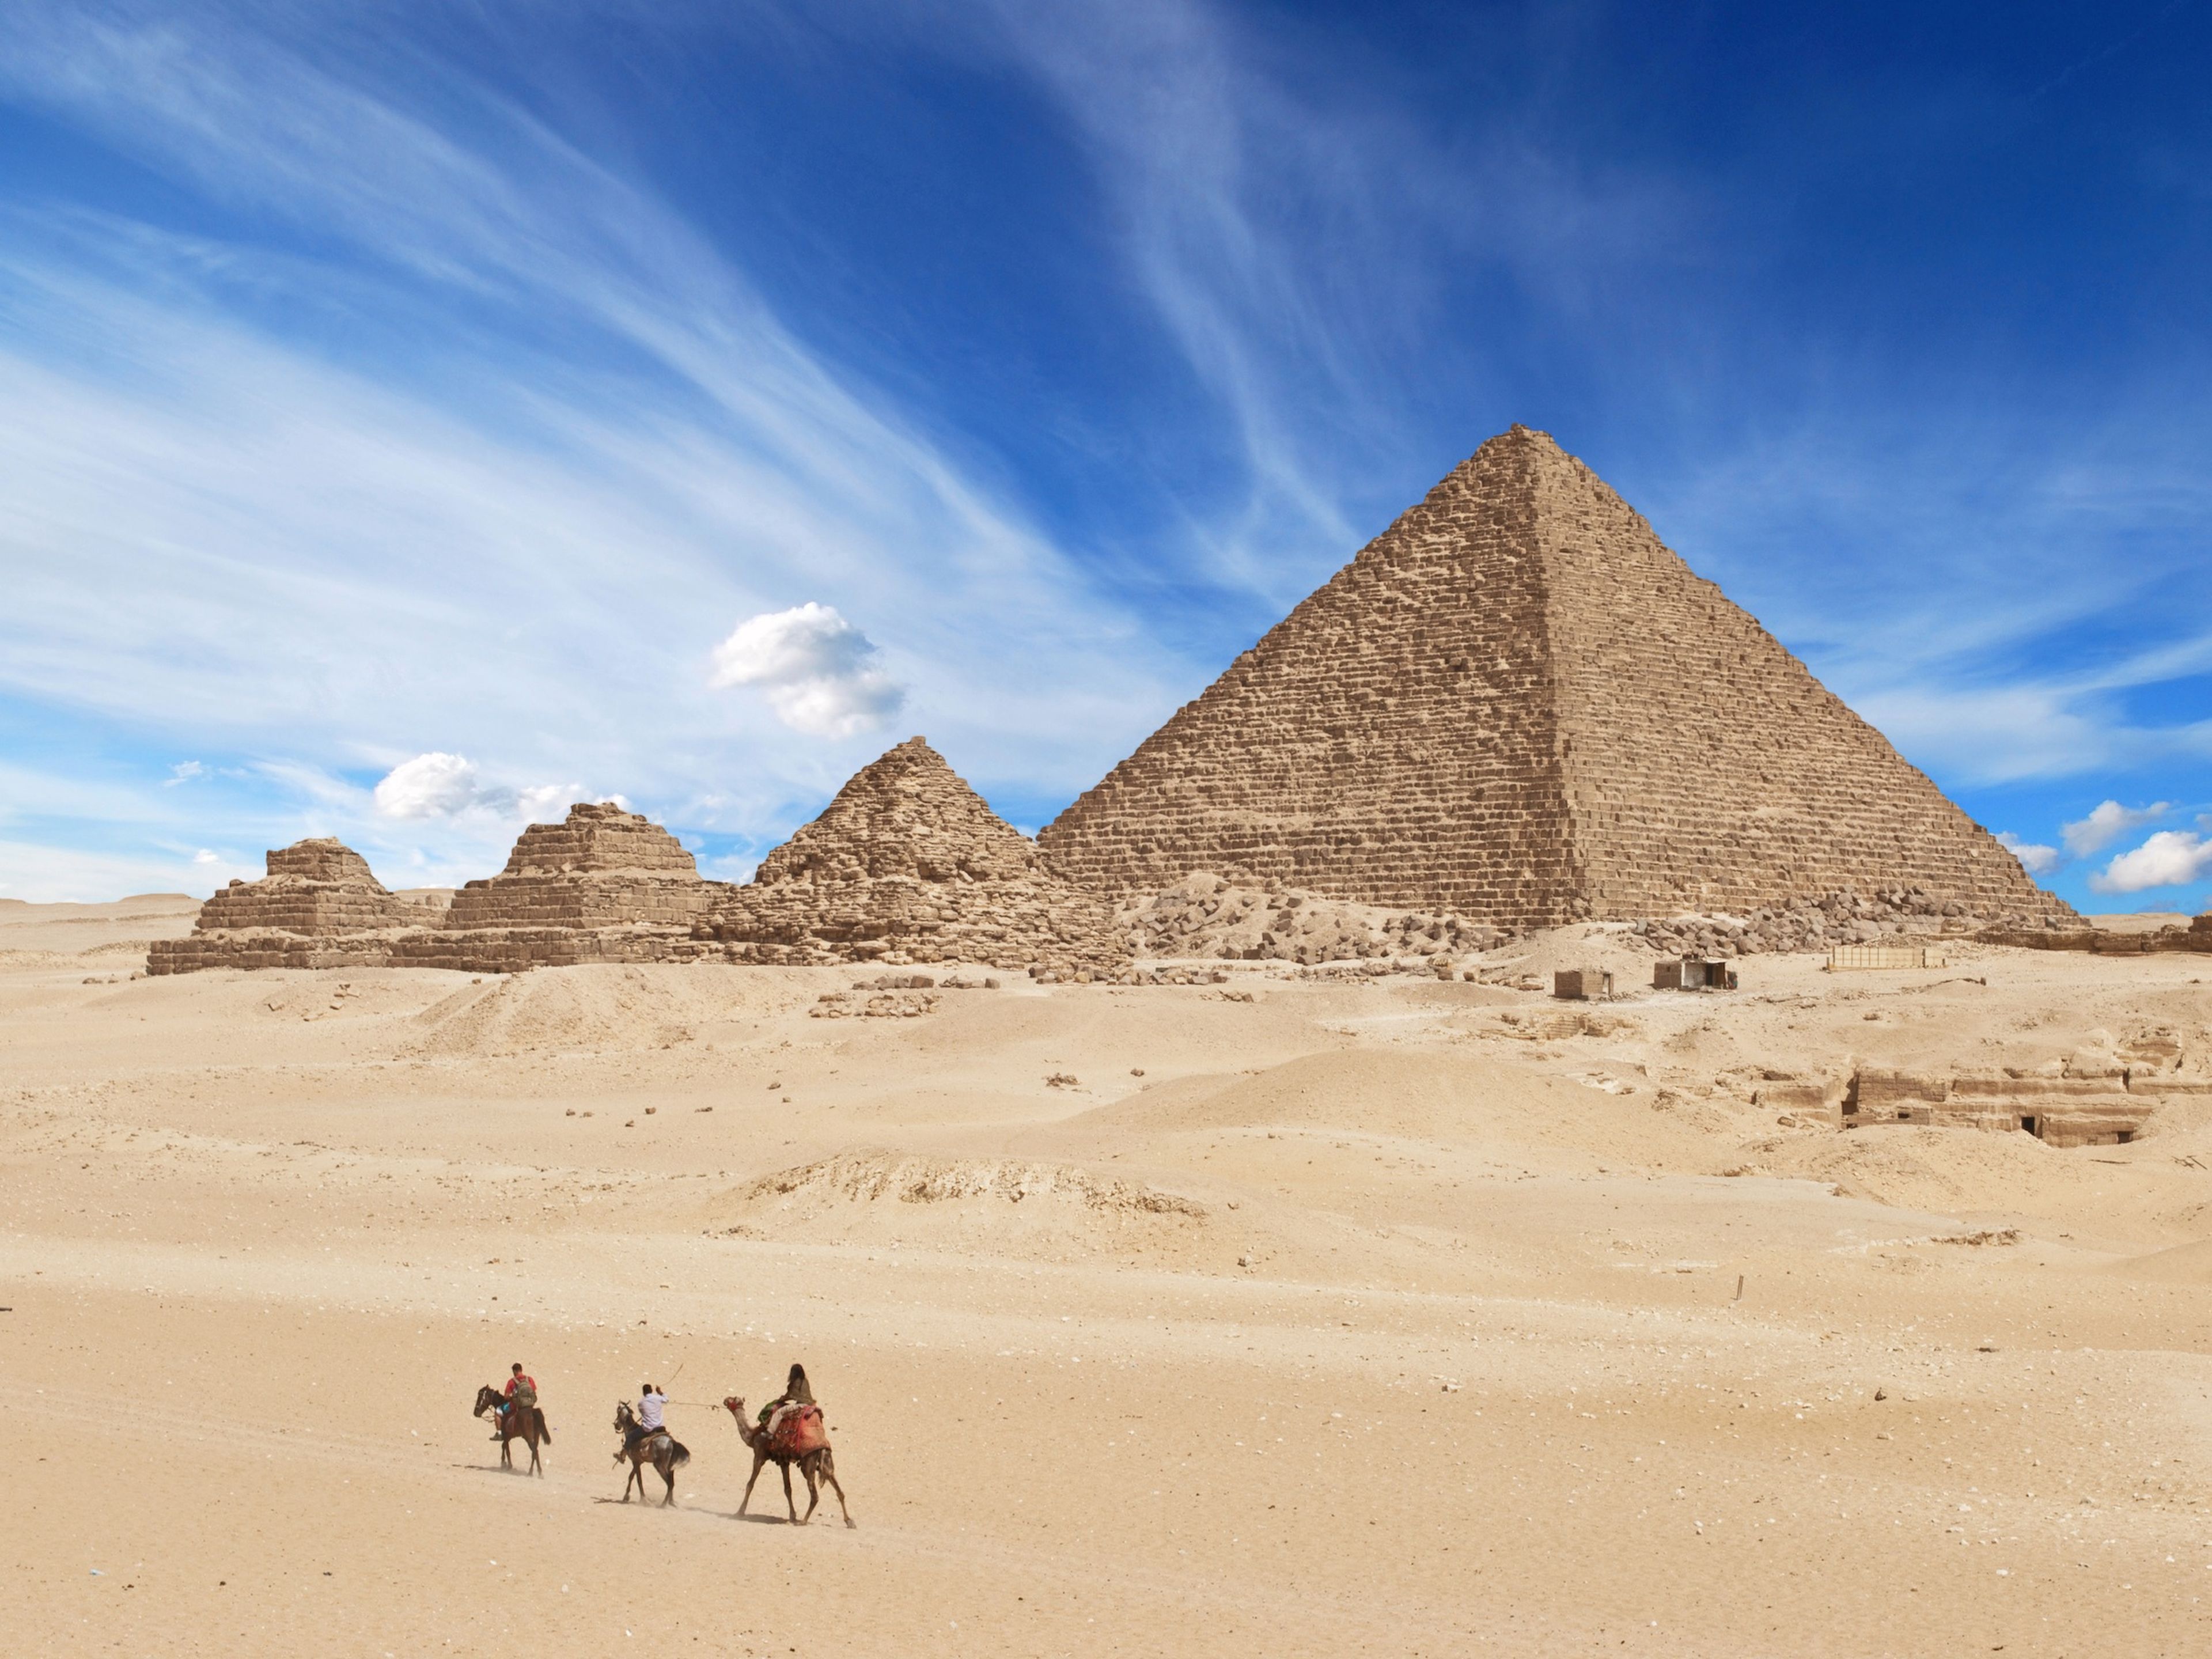 Misr piramidalari haqida. Великие пирамиды Гизы (Египет). Пирамида Гиза Египет. 2. Пирамиды Гизы, Египет. 3 Пирамиды Гизы.